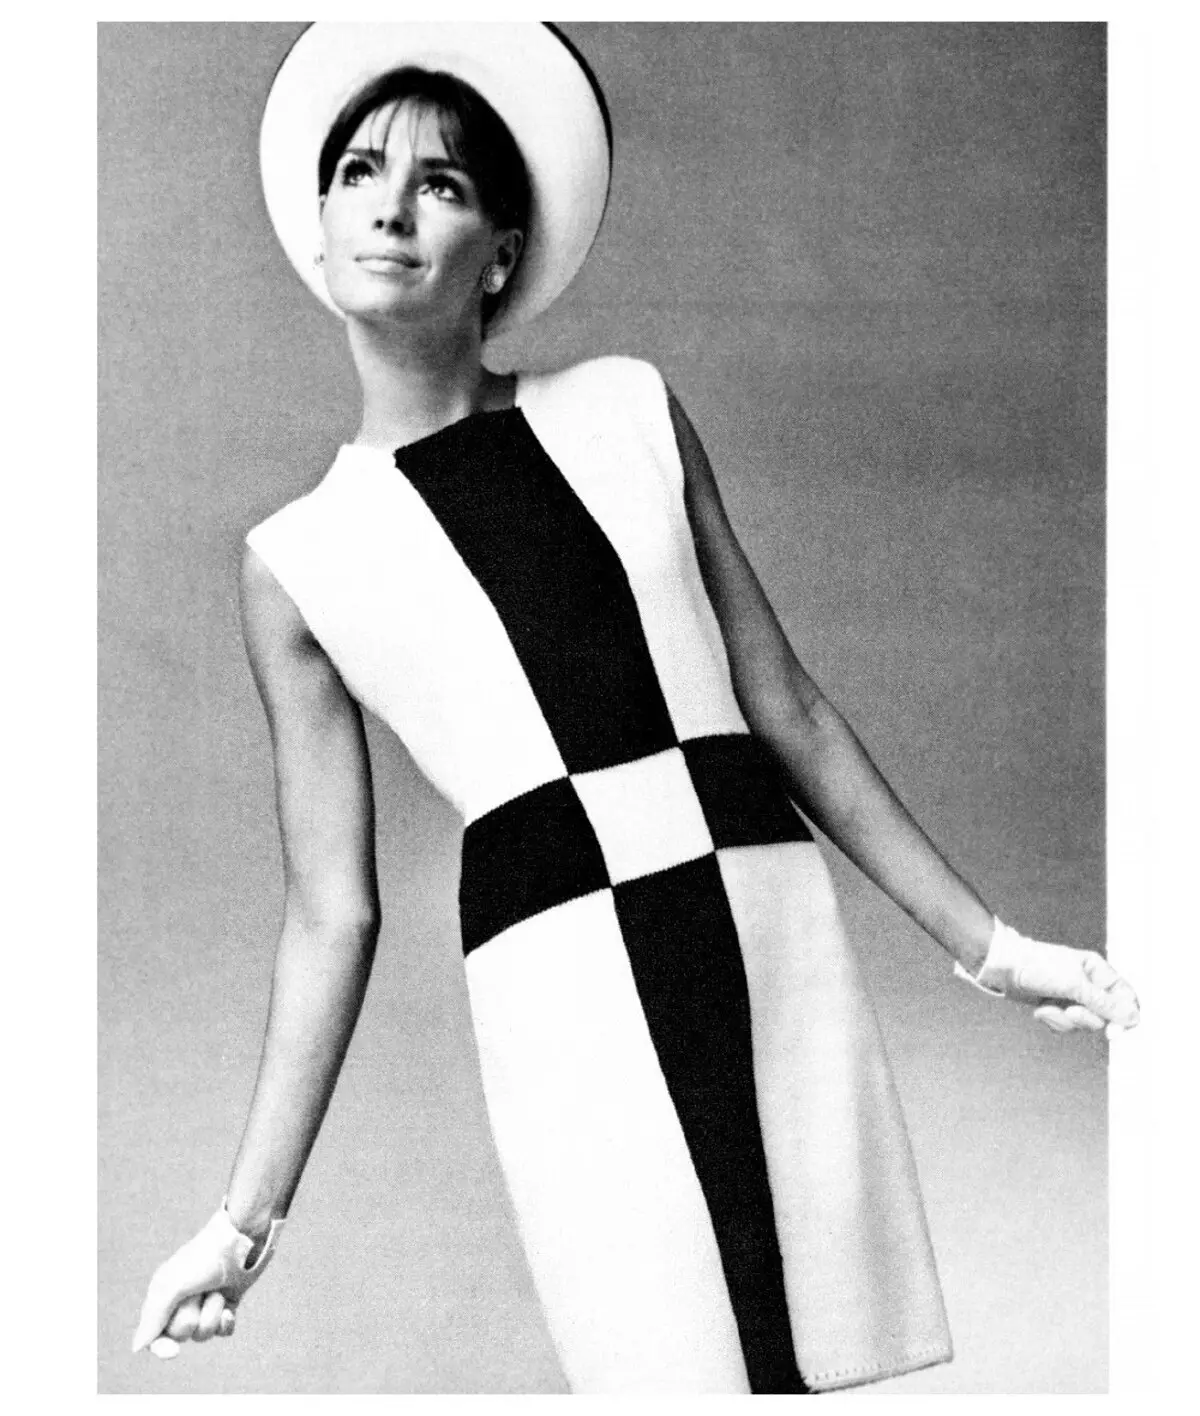 แฟชั่น: 60s (58 รูป): สไตล์เสื้อผ้าสตรี, 60s, ภาพหญิงที่งดงาม, วิธีการแต่งตัว fashionista ในยุคนั้น 3706_23